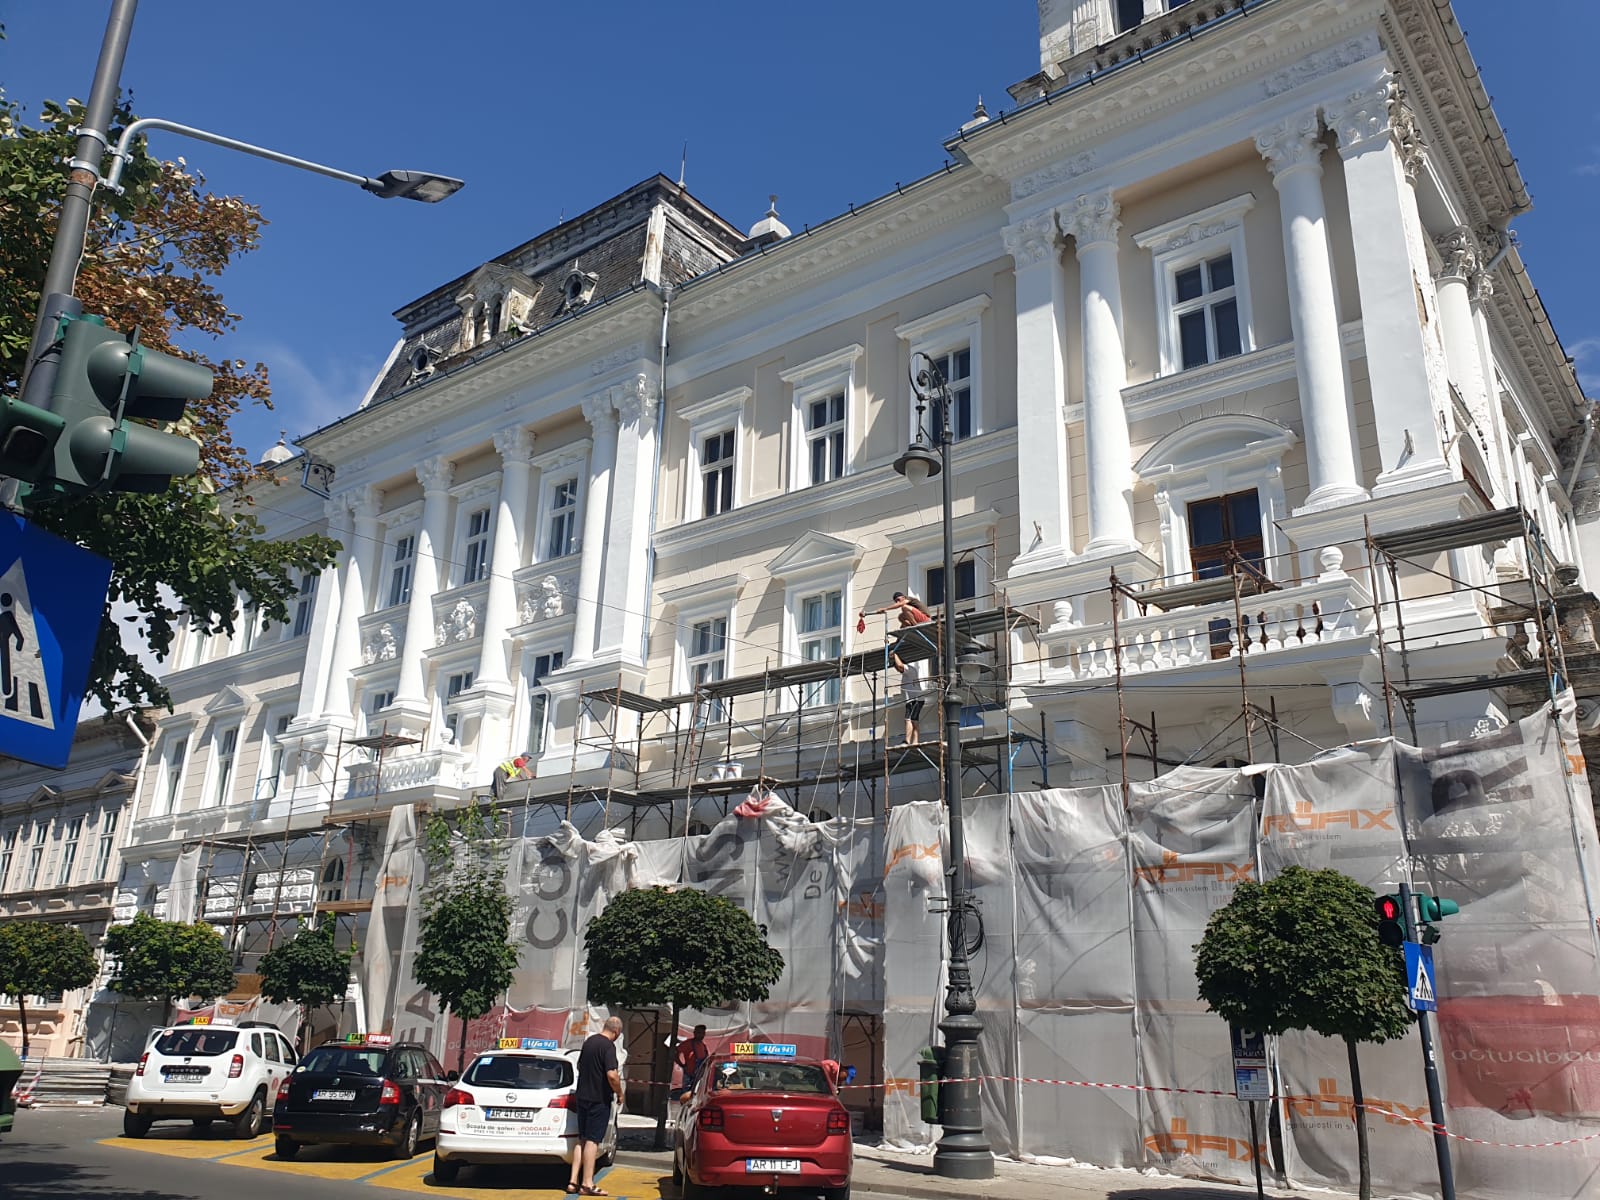 FOTO | Dezvelirea Palatului Cenad. A fost finalizată prima faţadă renovată